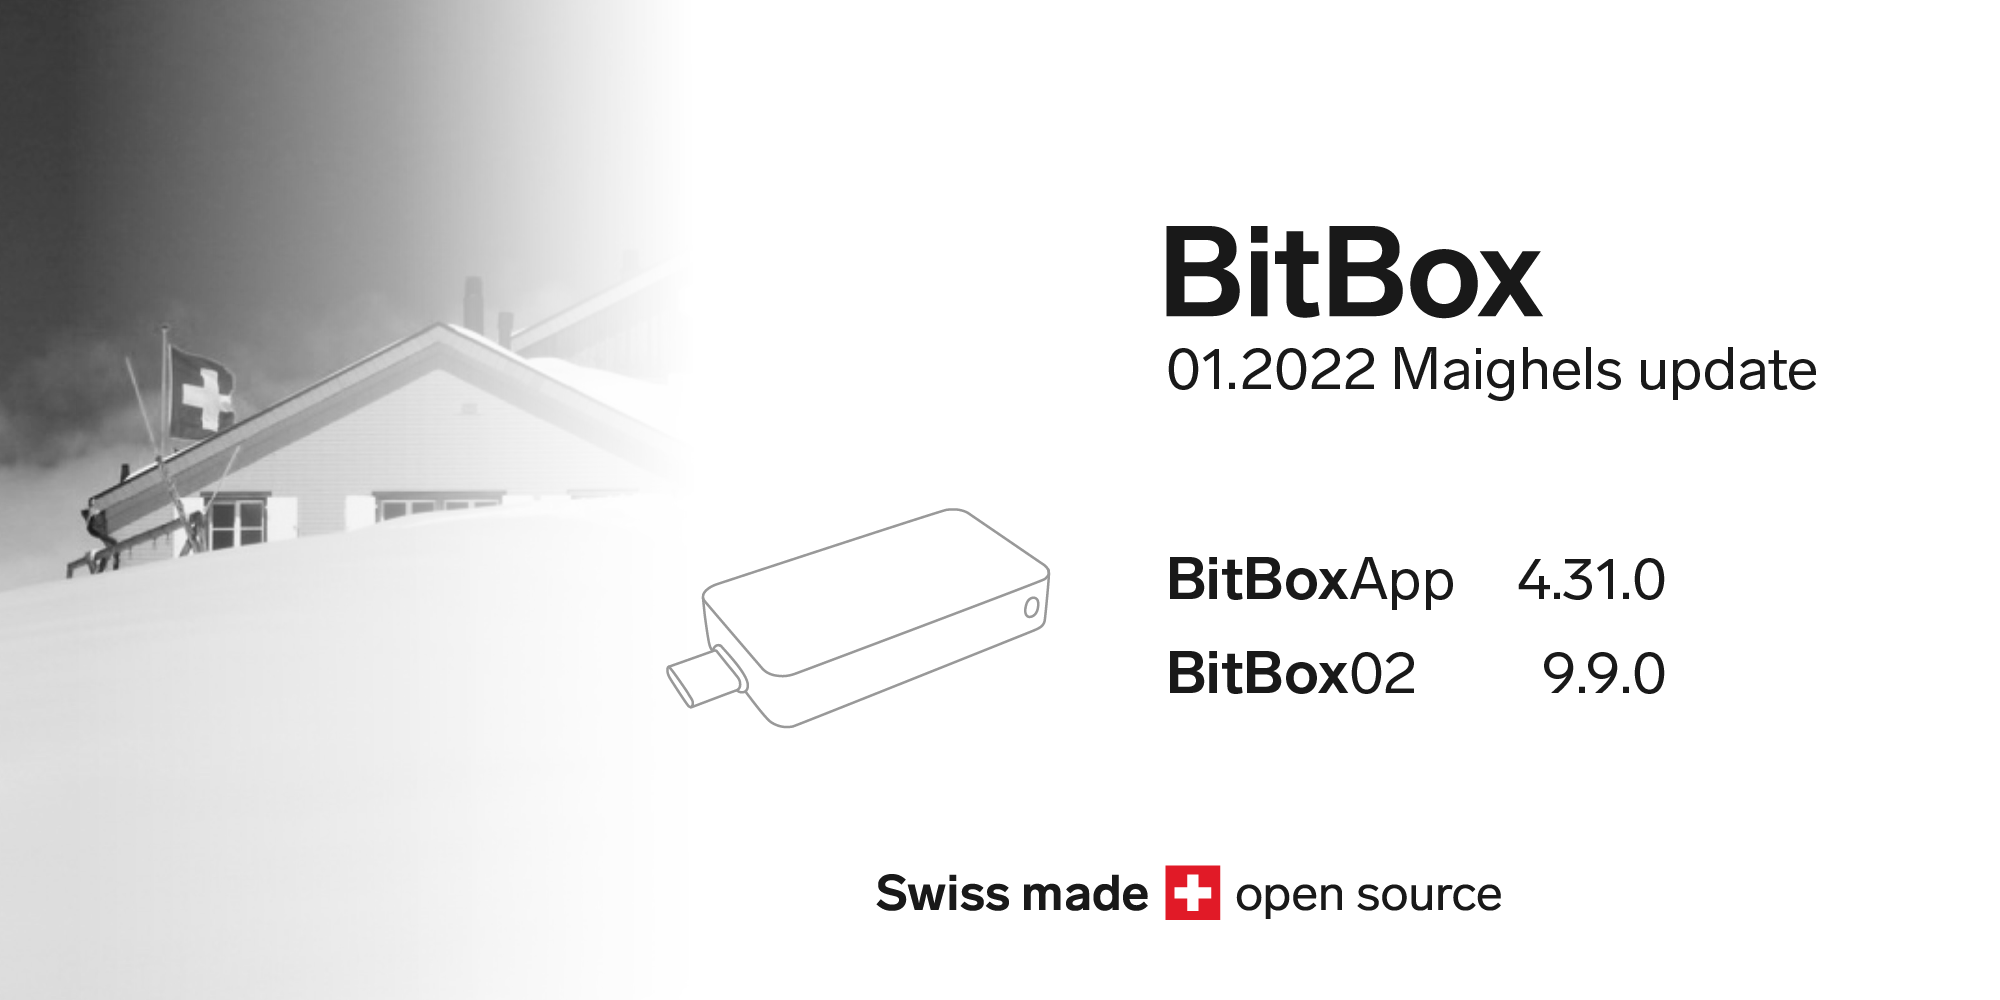 BitBox 01.2022 Maighels-Update